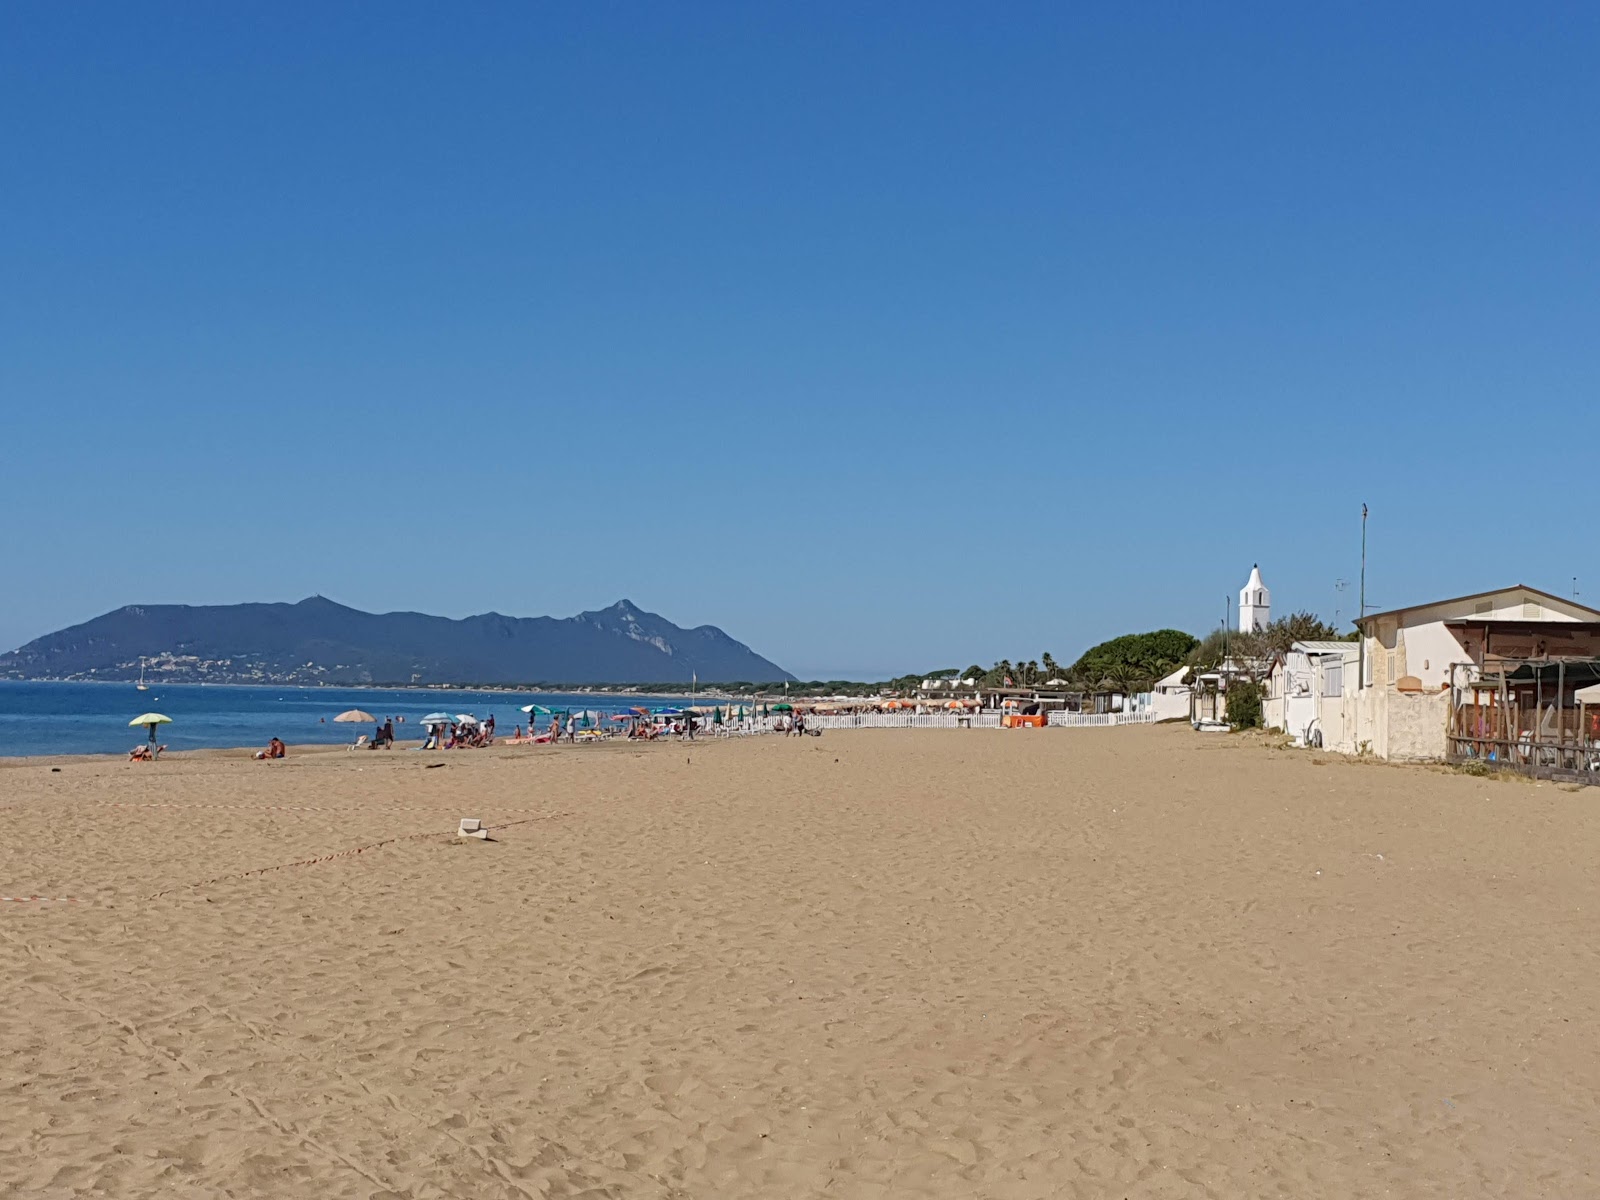 Fotografie cu Terracina Beach zonă de stațiune de pe plajă